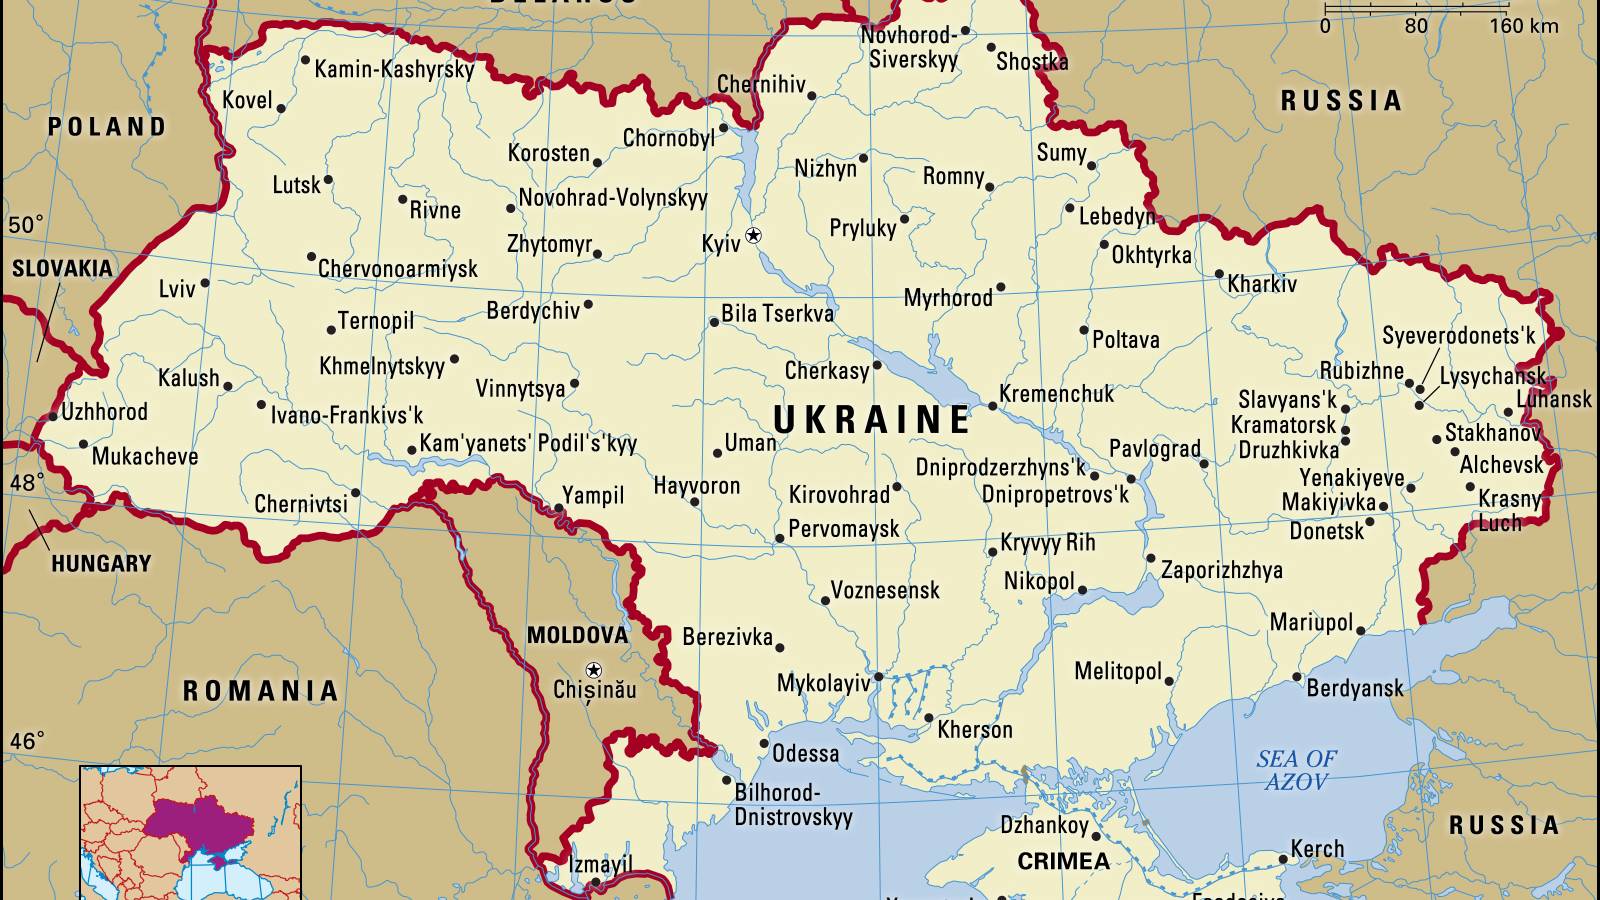 Harta Teritoriilor Ocupate de catre Armata Rusa in Ucraina - 4 Martie 2022